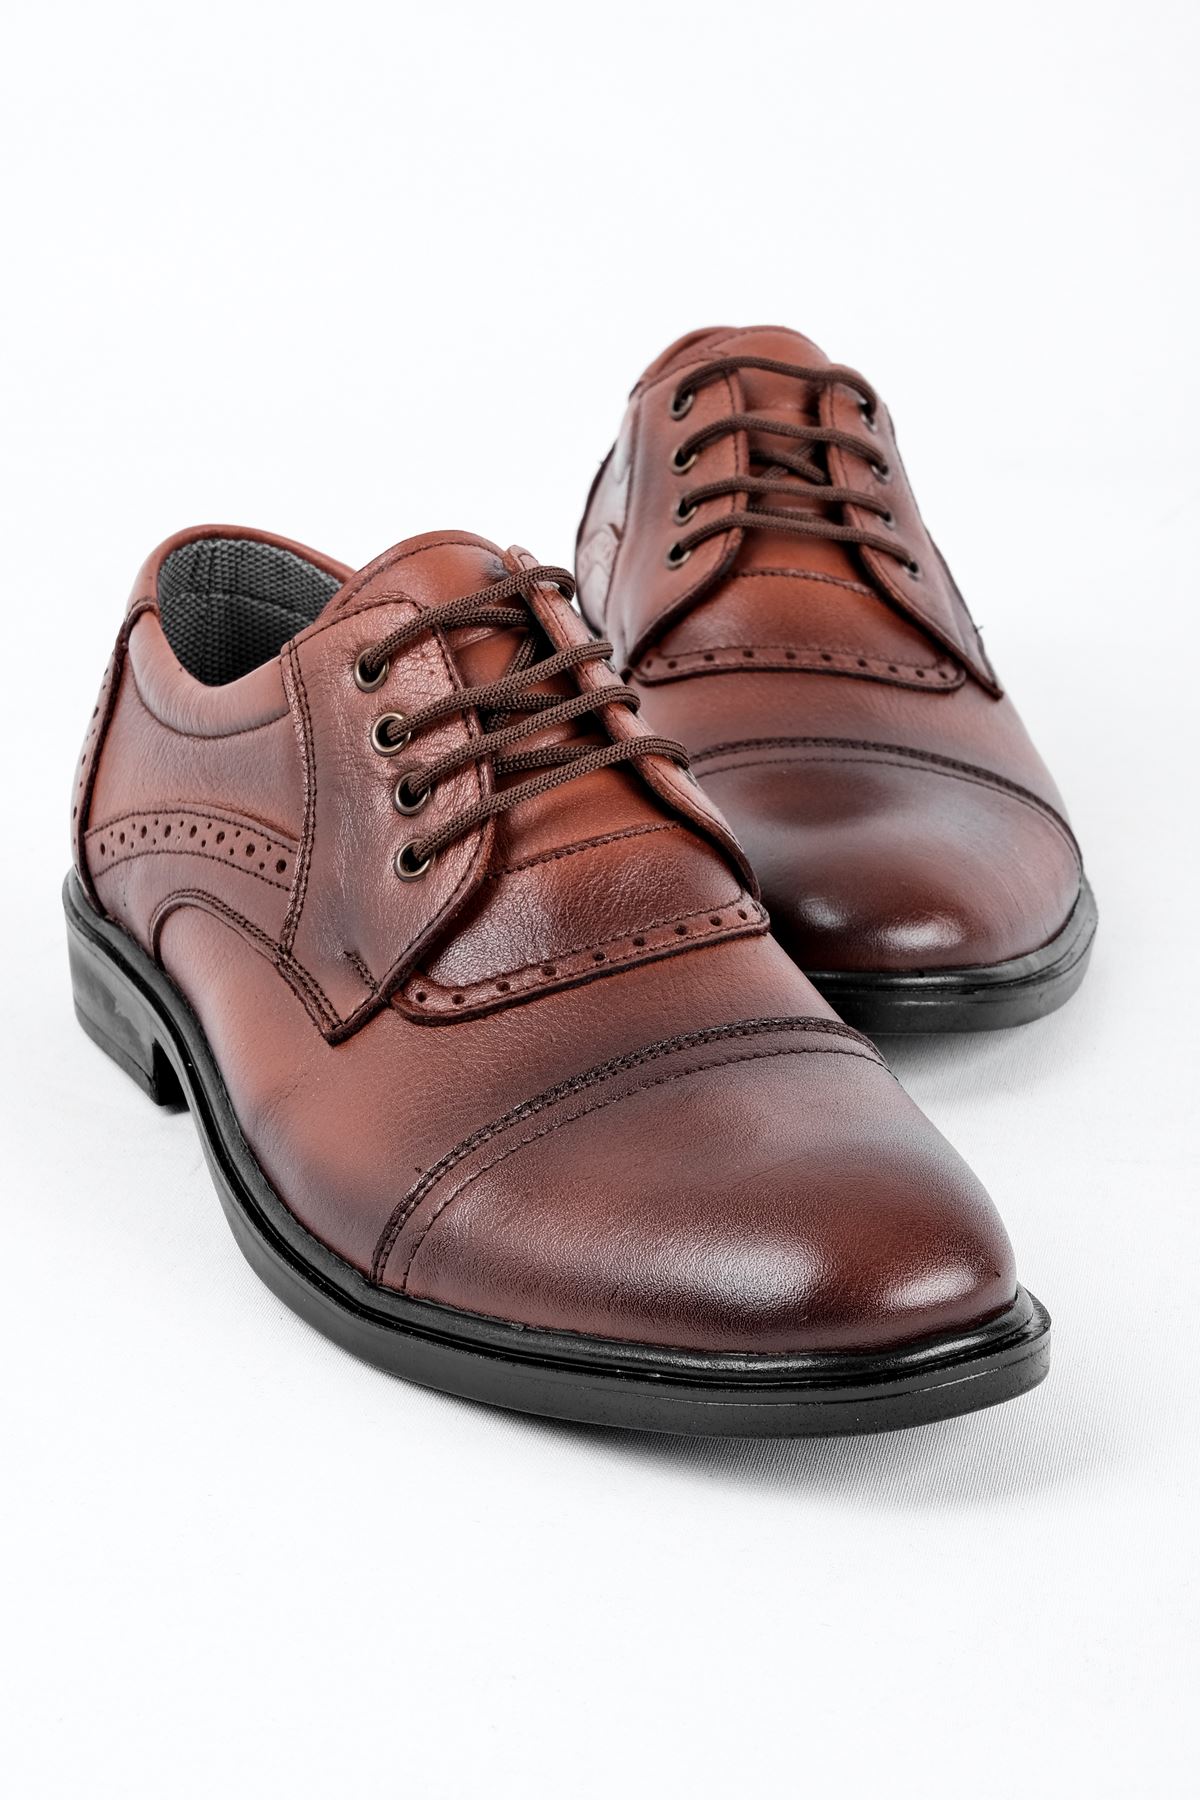 Vitela Erkek Hakiki Deri Ayakkabı Klasik-Kahverengi